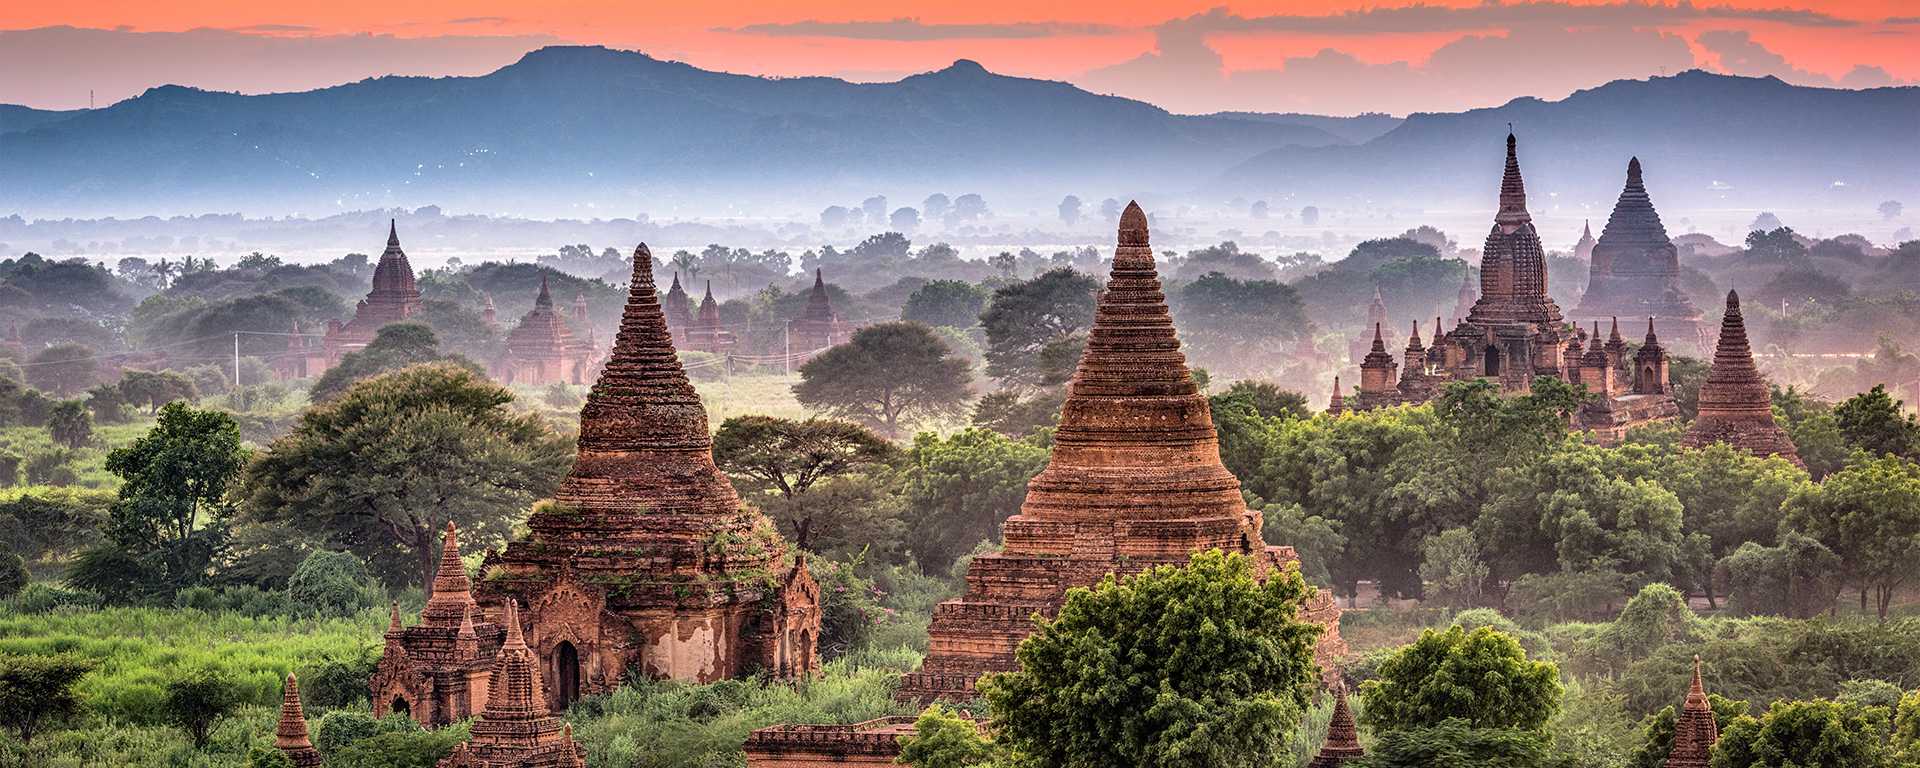 Die Tempel von Bagan im Abendlicht